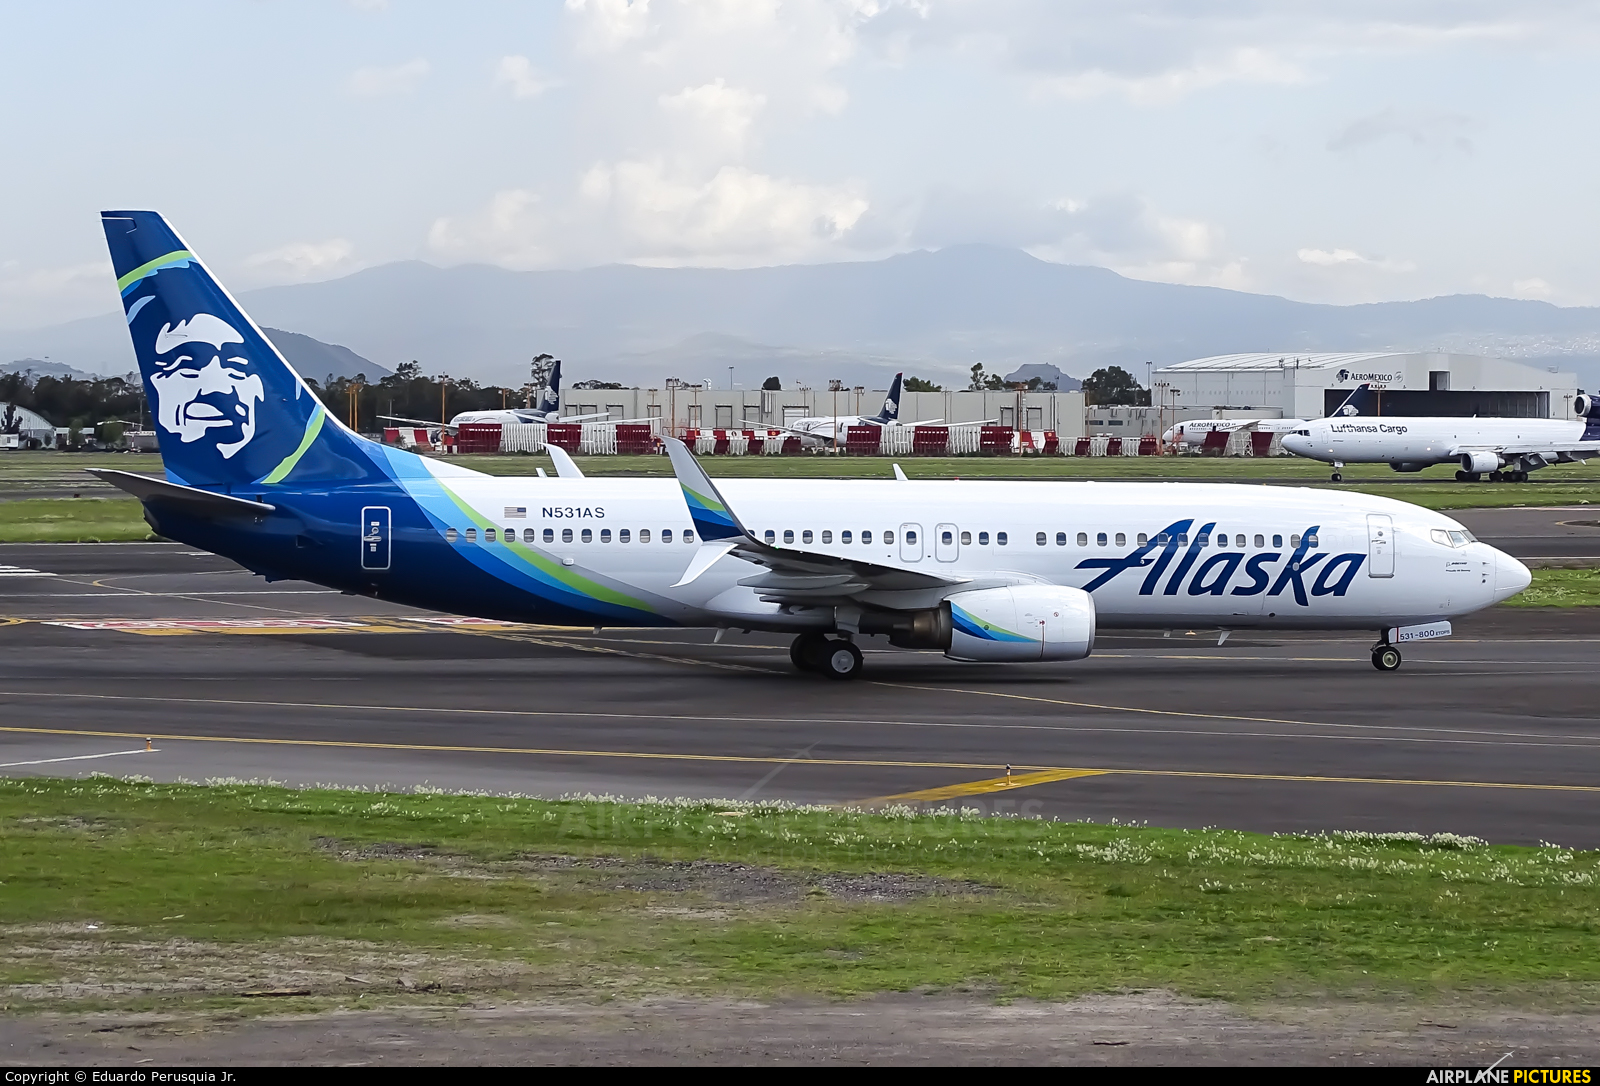 Alaska Airlines N531AS aircraft at Mexico City - Licenciado Benito Juarez Intl